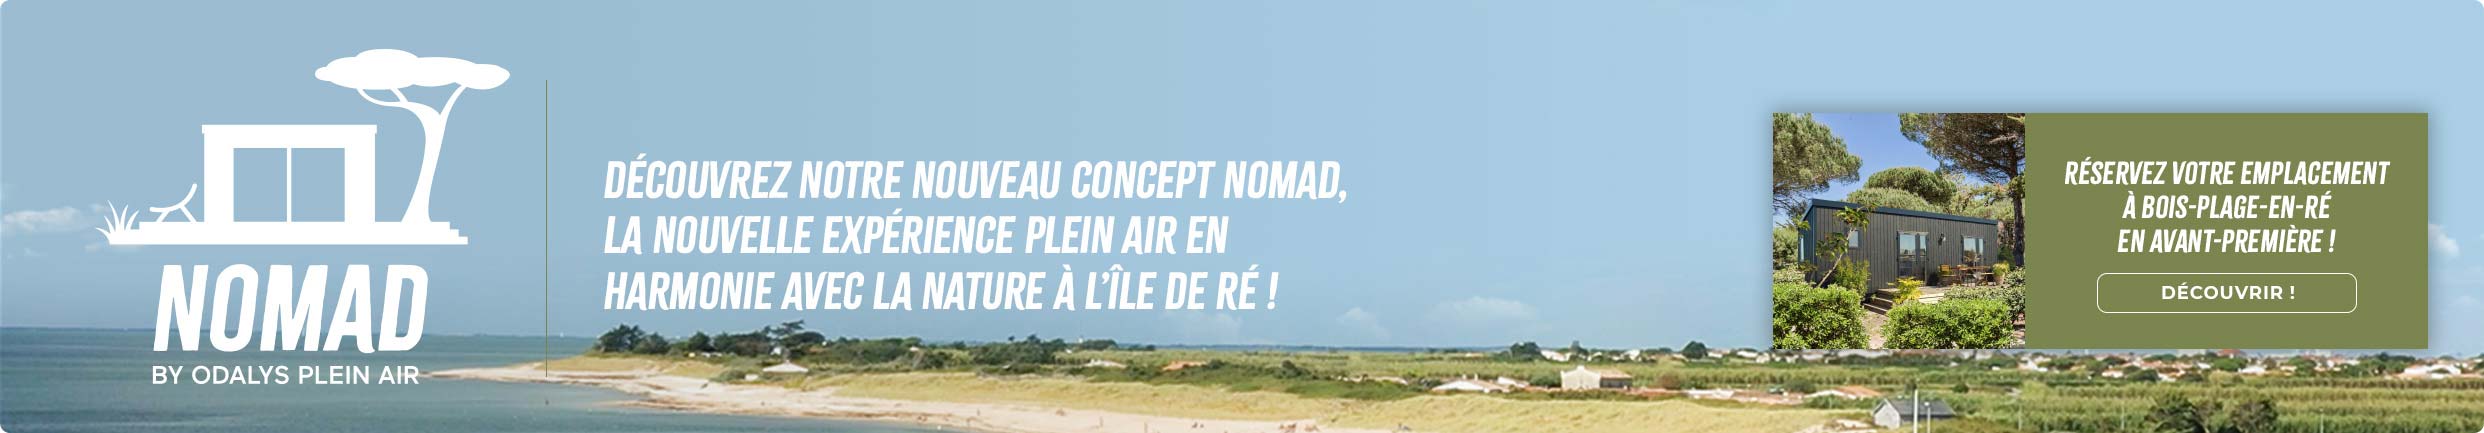 Découvrez notre nouveau concept Nomad, la nouvelle expérience Plein Air en harmonie avec la nature à l'île de Ré !